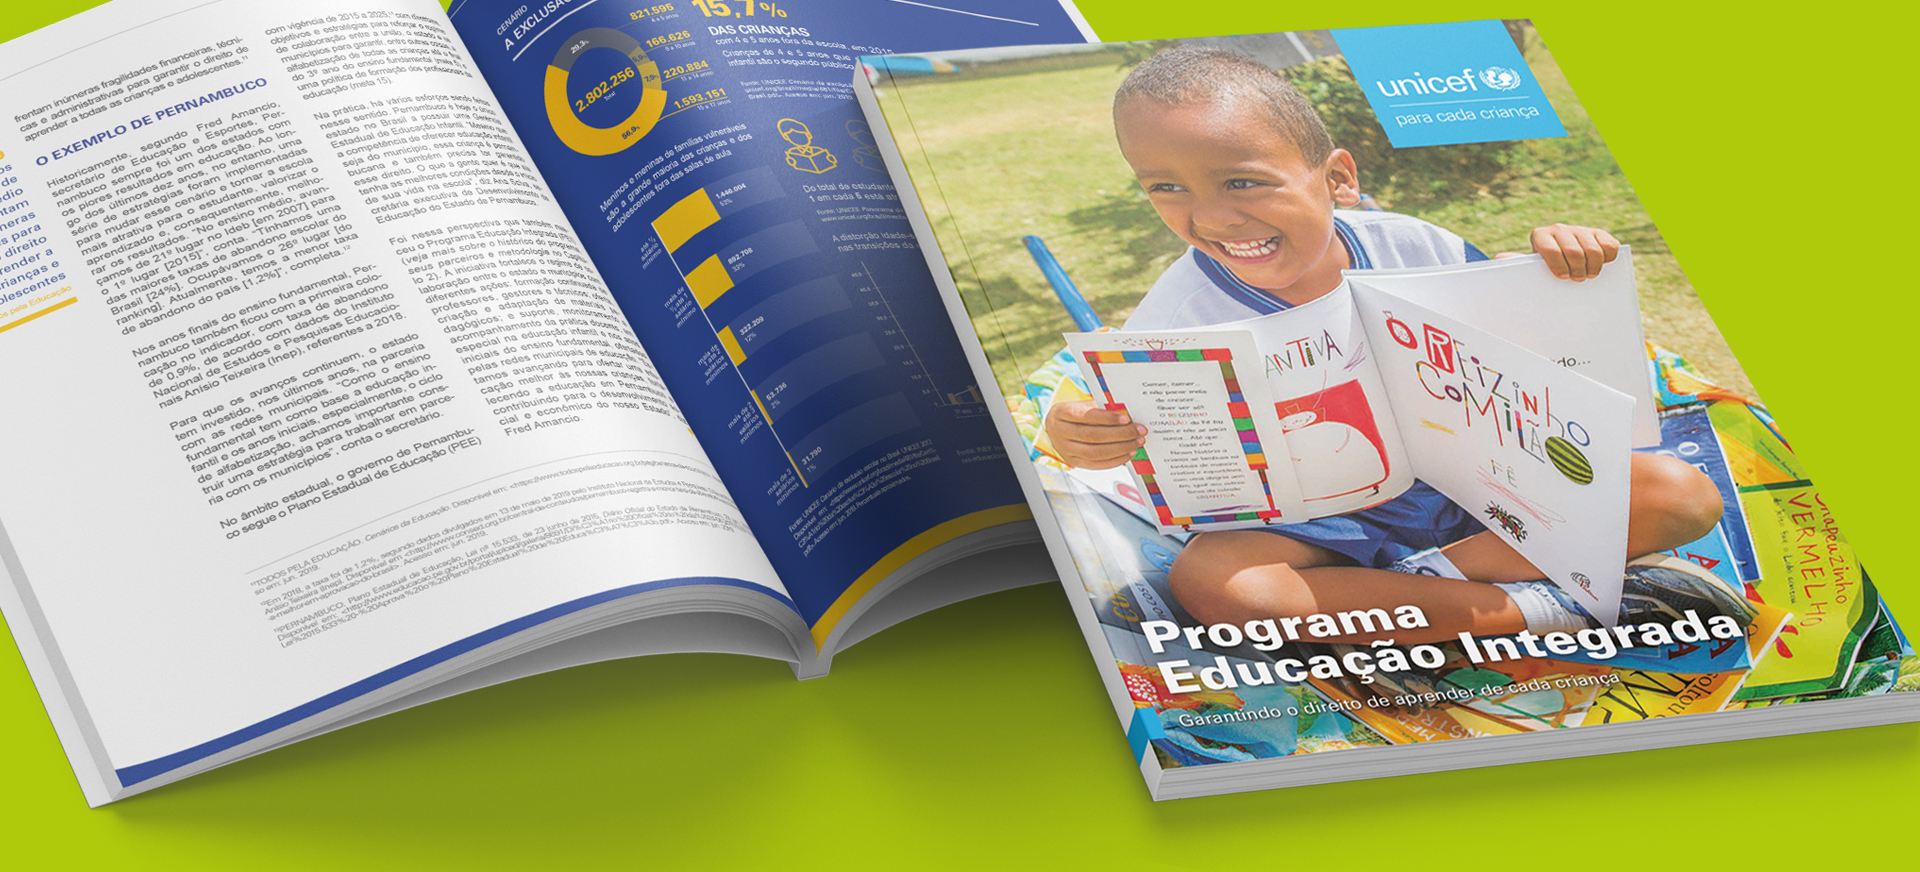 Livro Programa Educação Integrada – Garantindo o direito de aprender de cada criança - UNICEF